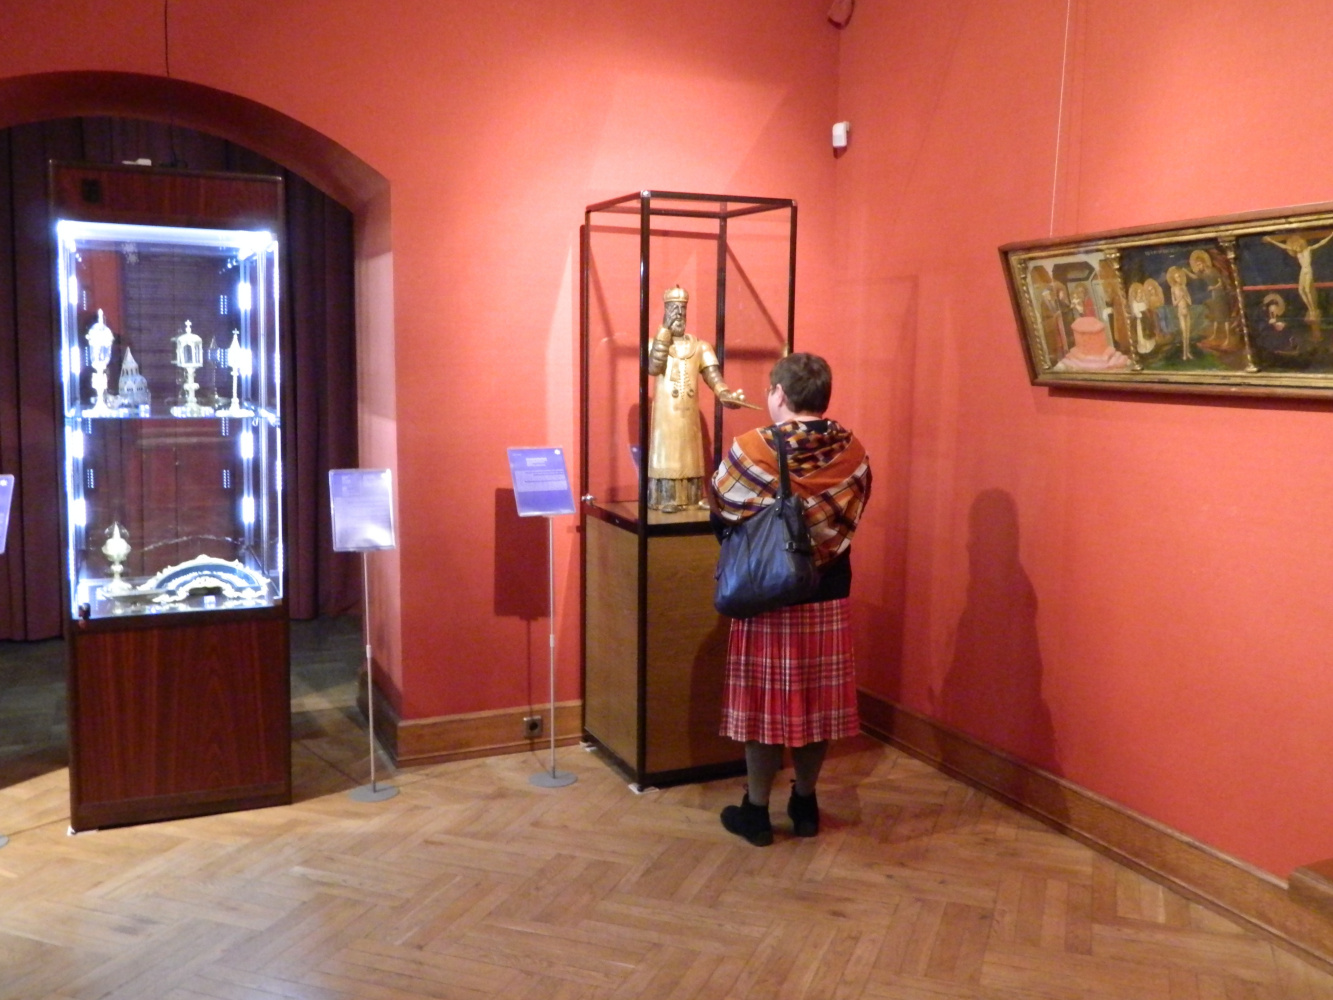 "VENITE, ADOREMUS - приидите, поклонимся": на выставке - редкие экспонаты из фондов Музея Ханенко